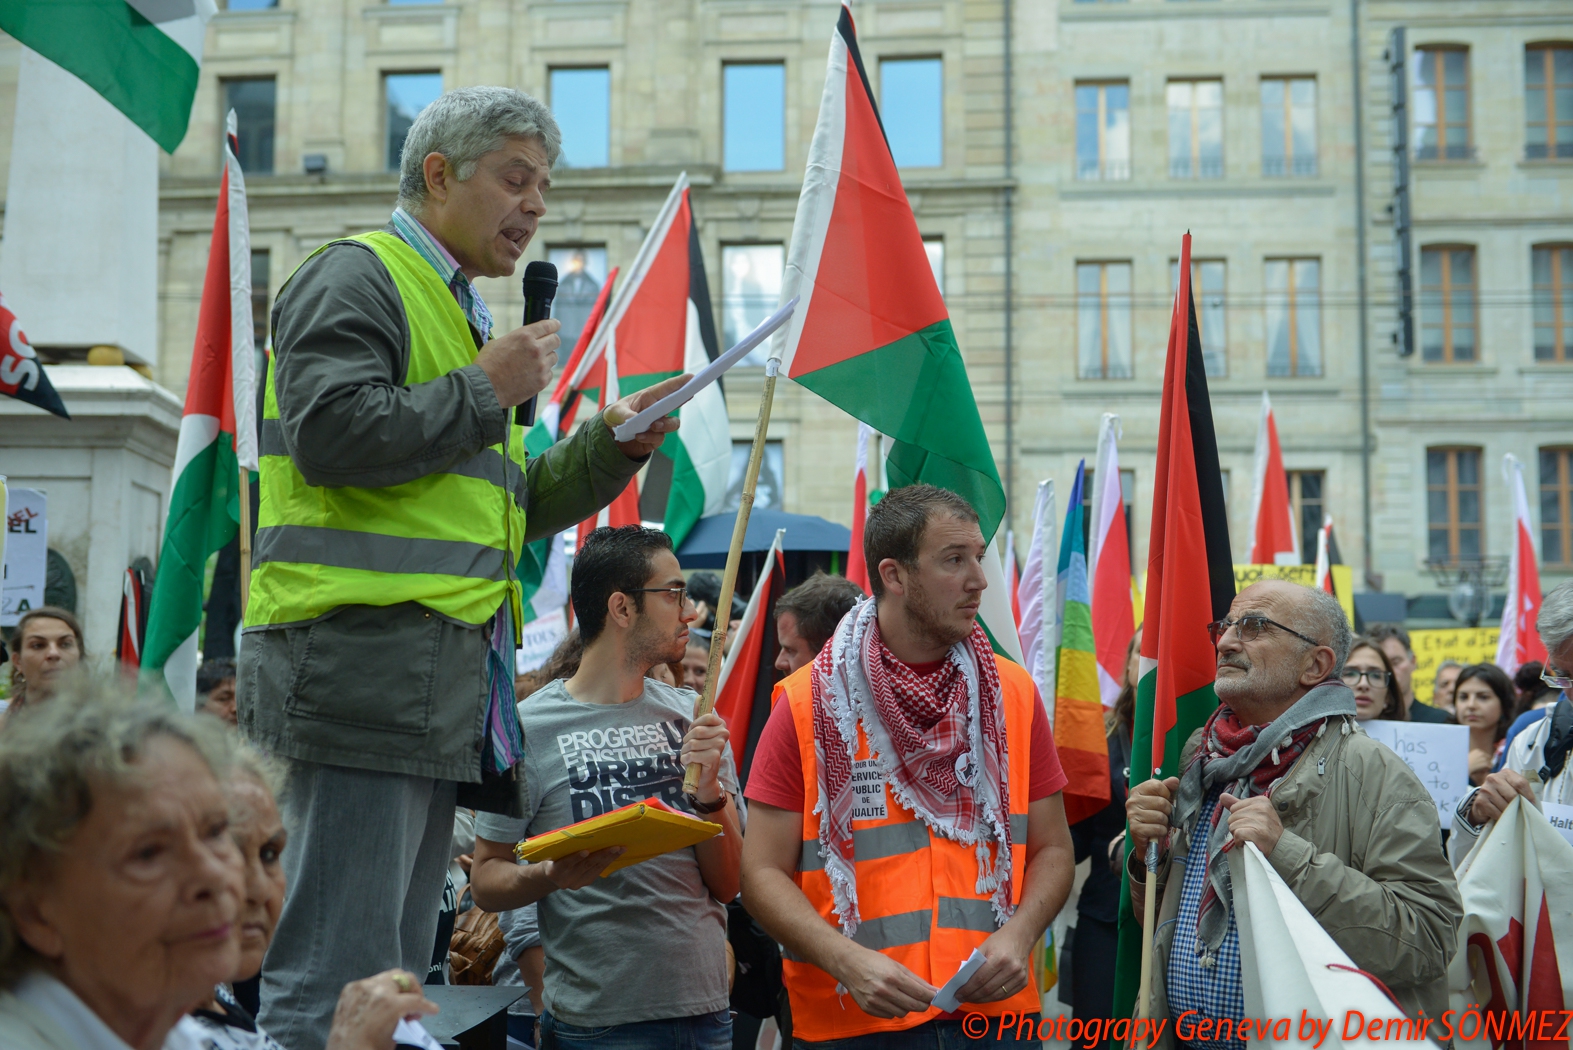 Grande manifestation pacifique à Genève en soutien au peuple Palestinien-6415.jpg